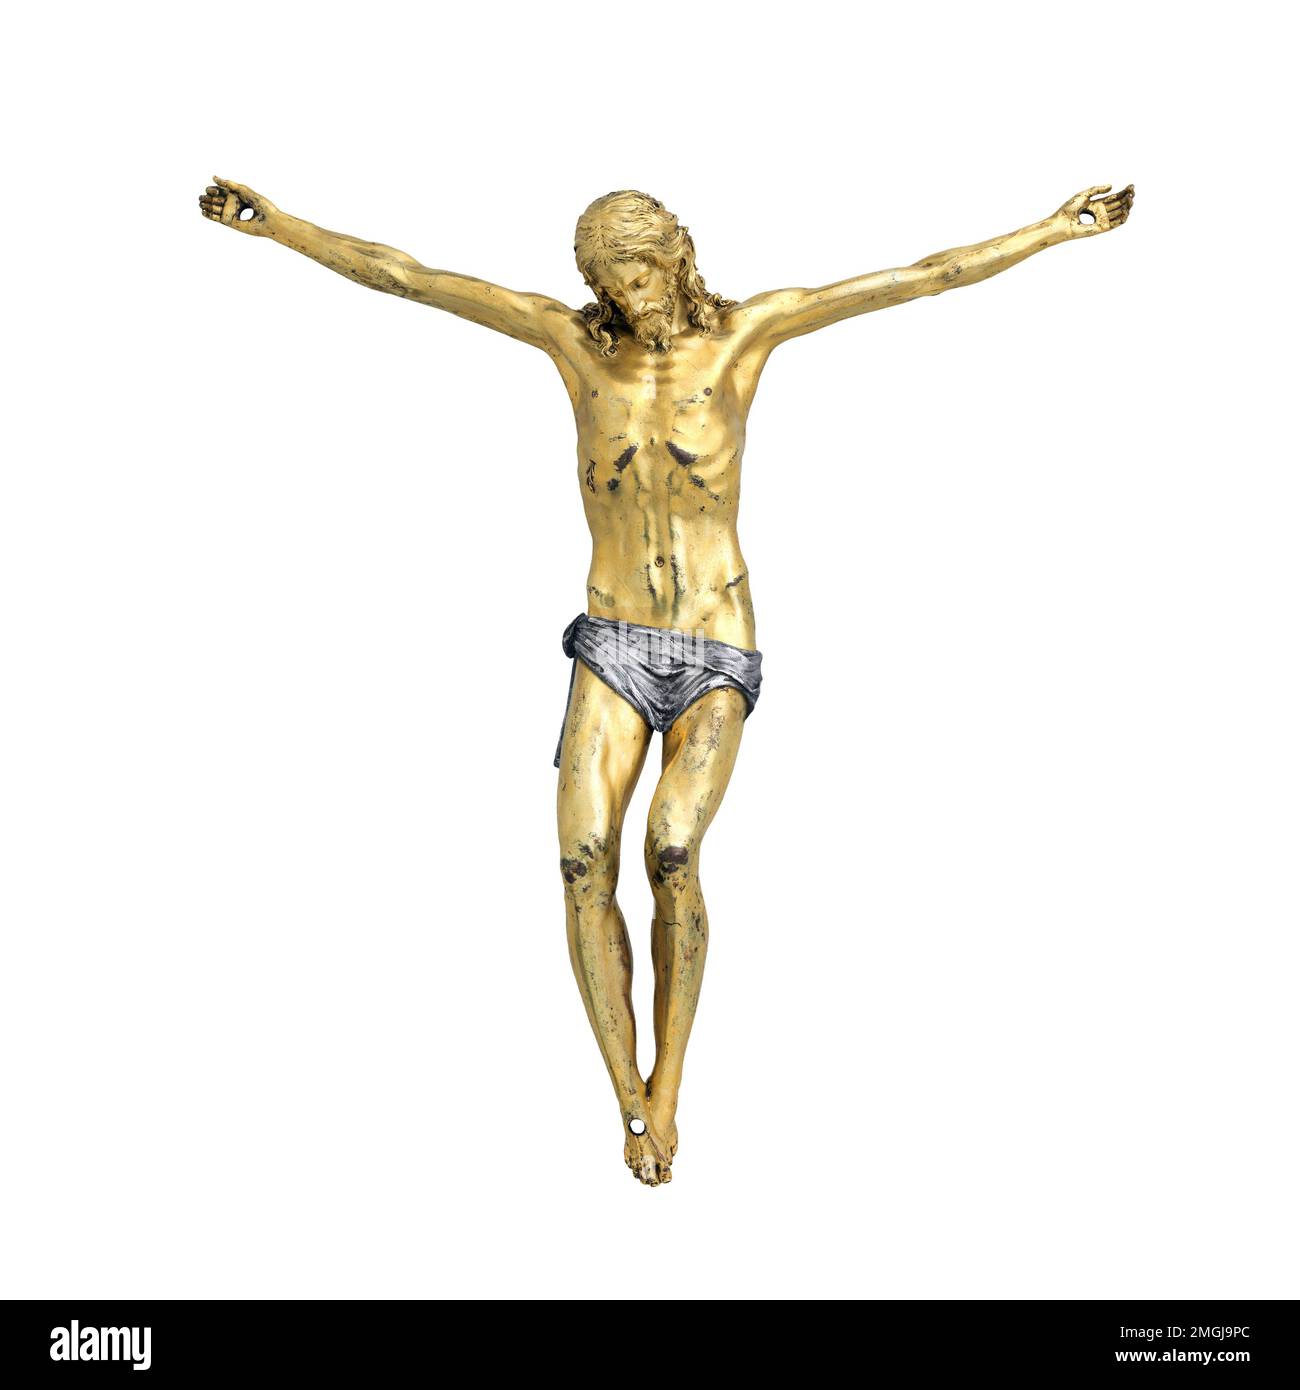 Gesù Cristo corpus da un crocifisso isolato su sfondo bianco, vista frontale immagine a colori Foto Stock